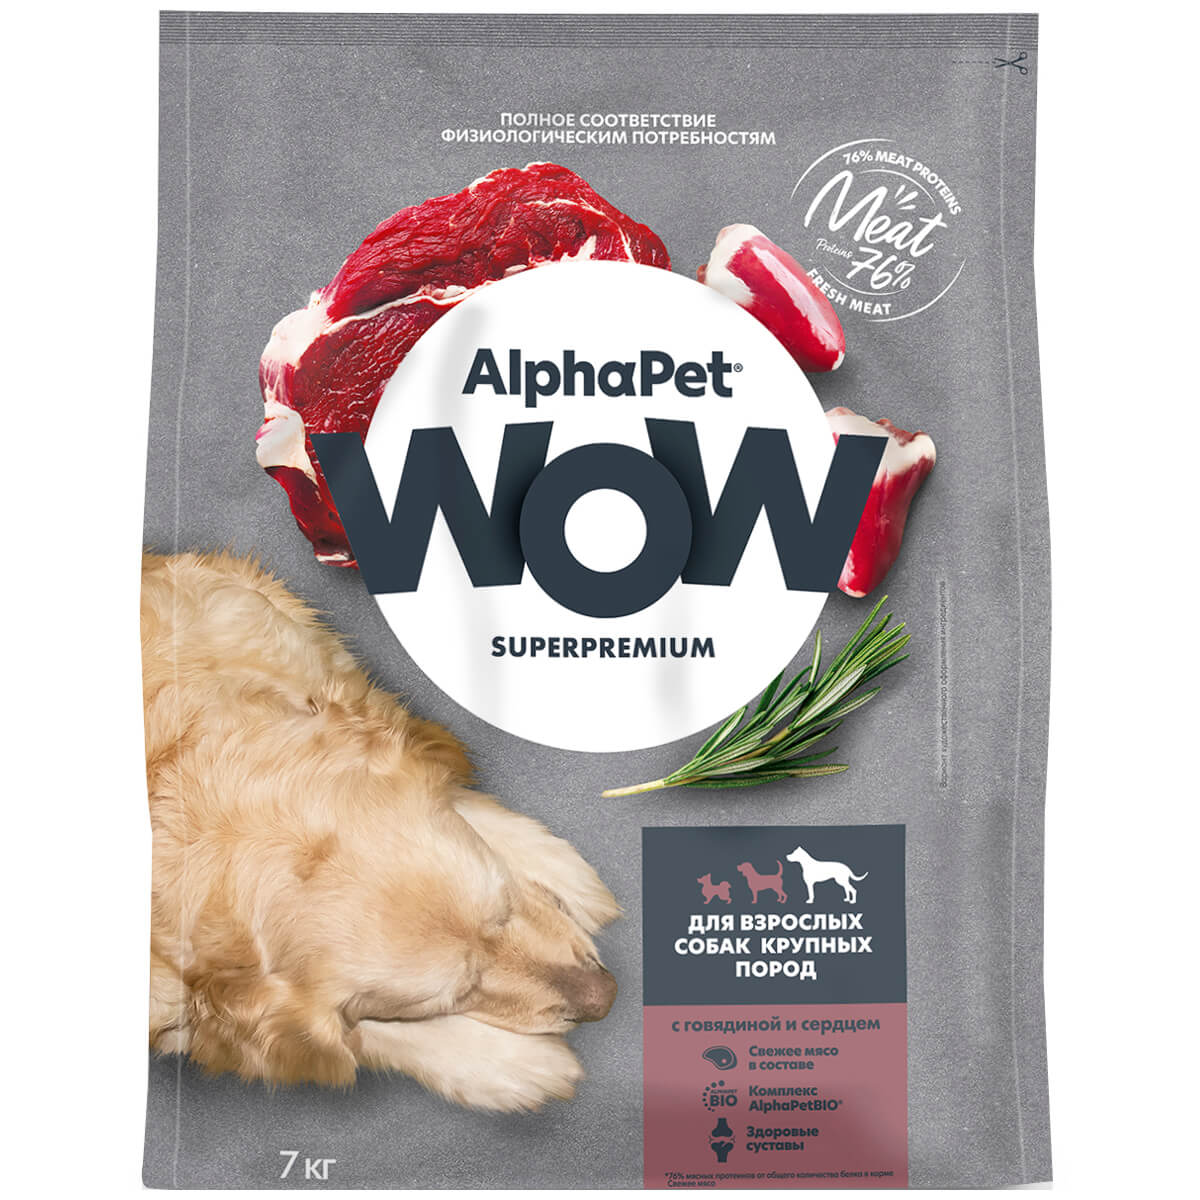 SUPERPREMIUM 7 кг сухой корм для взрослых собак крупных пород с говядиной и сердцем, ALPHAPET WOW